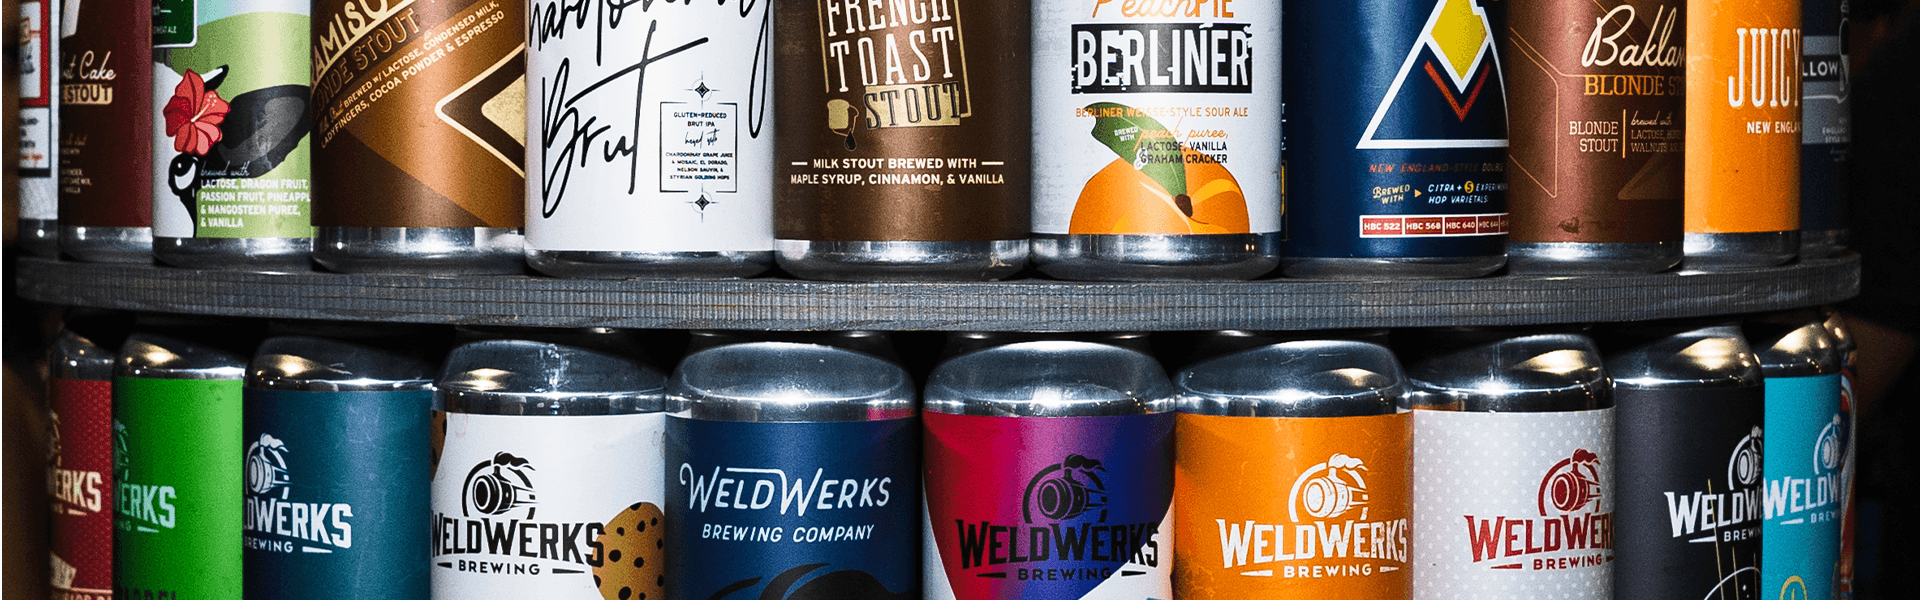 Weldwerks Brewing Co